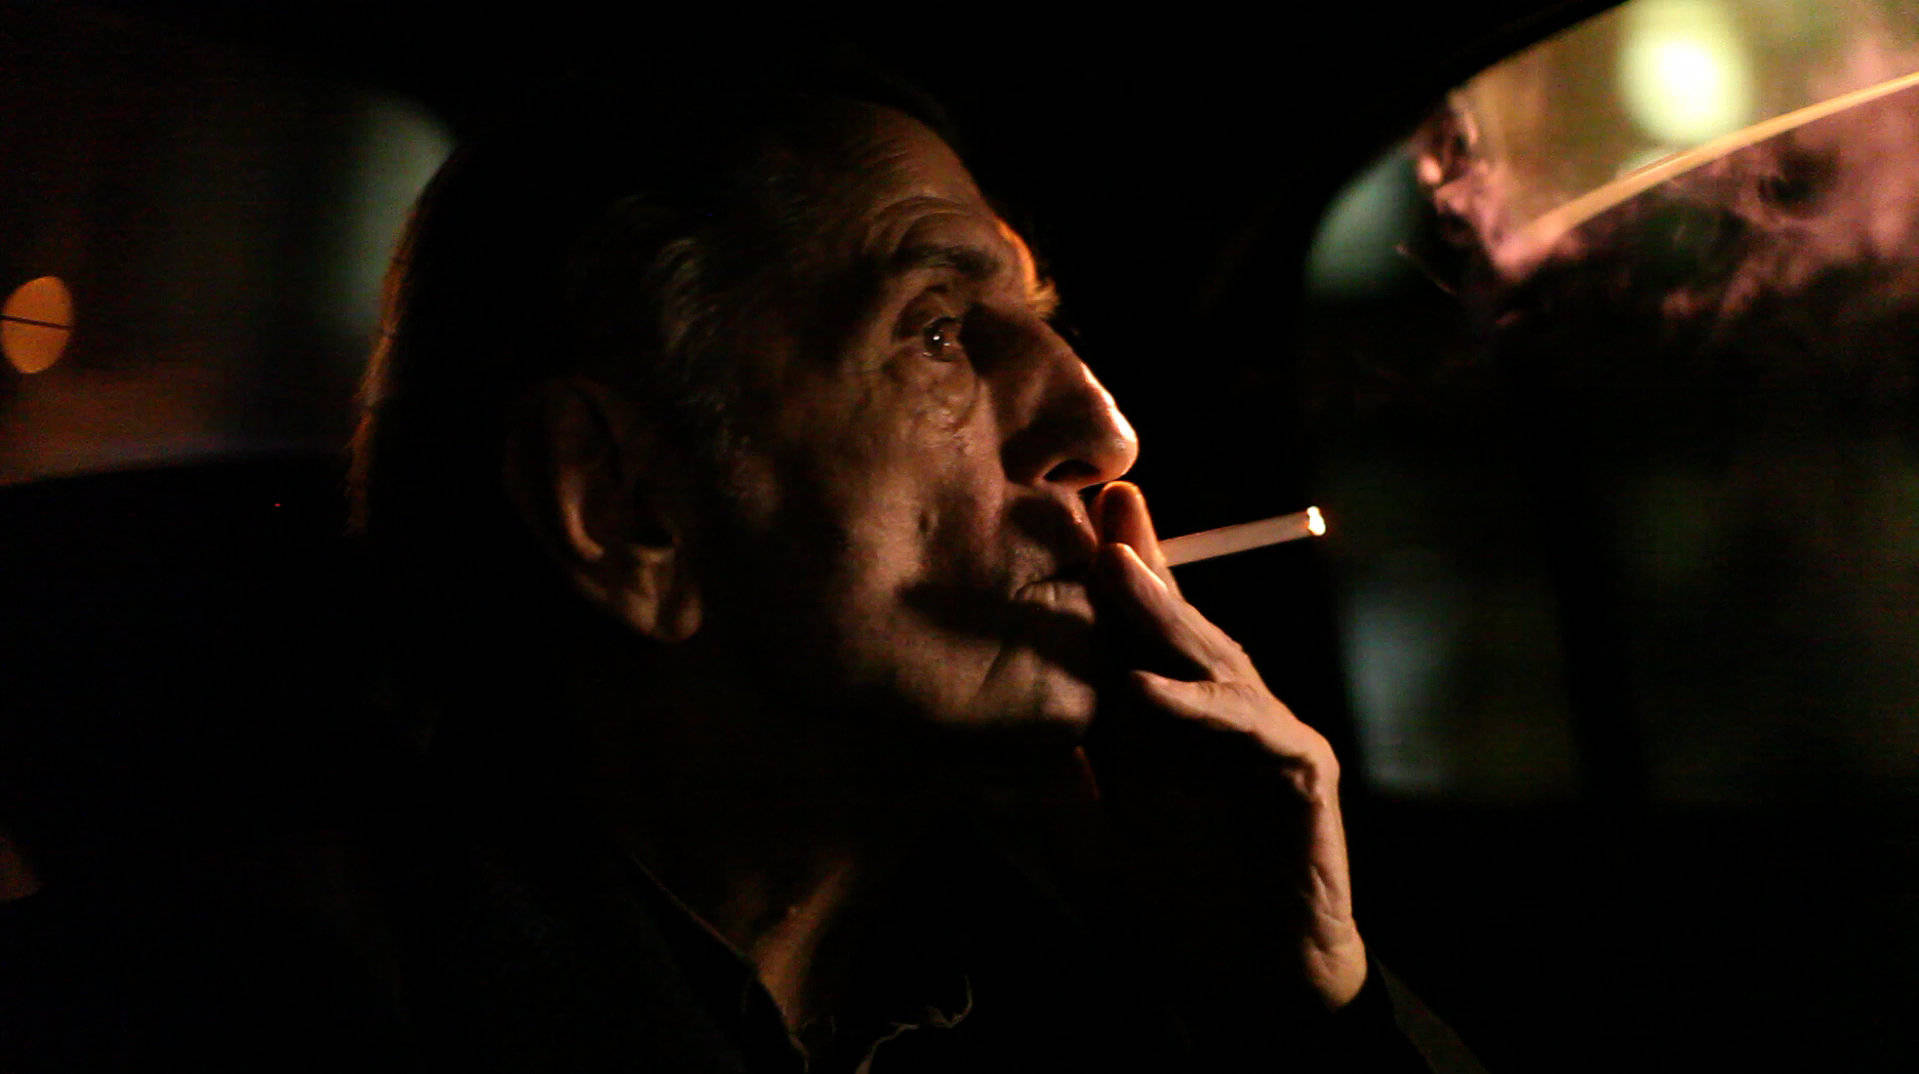 Fotografievon Harry Dean Stanton Beim Rauchen Einer Zigarette Wallpaper